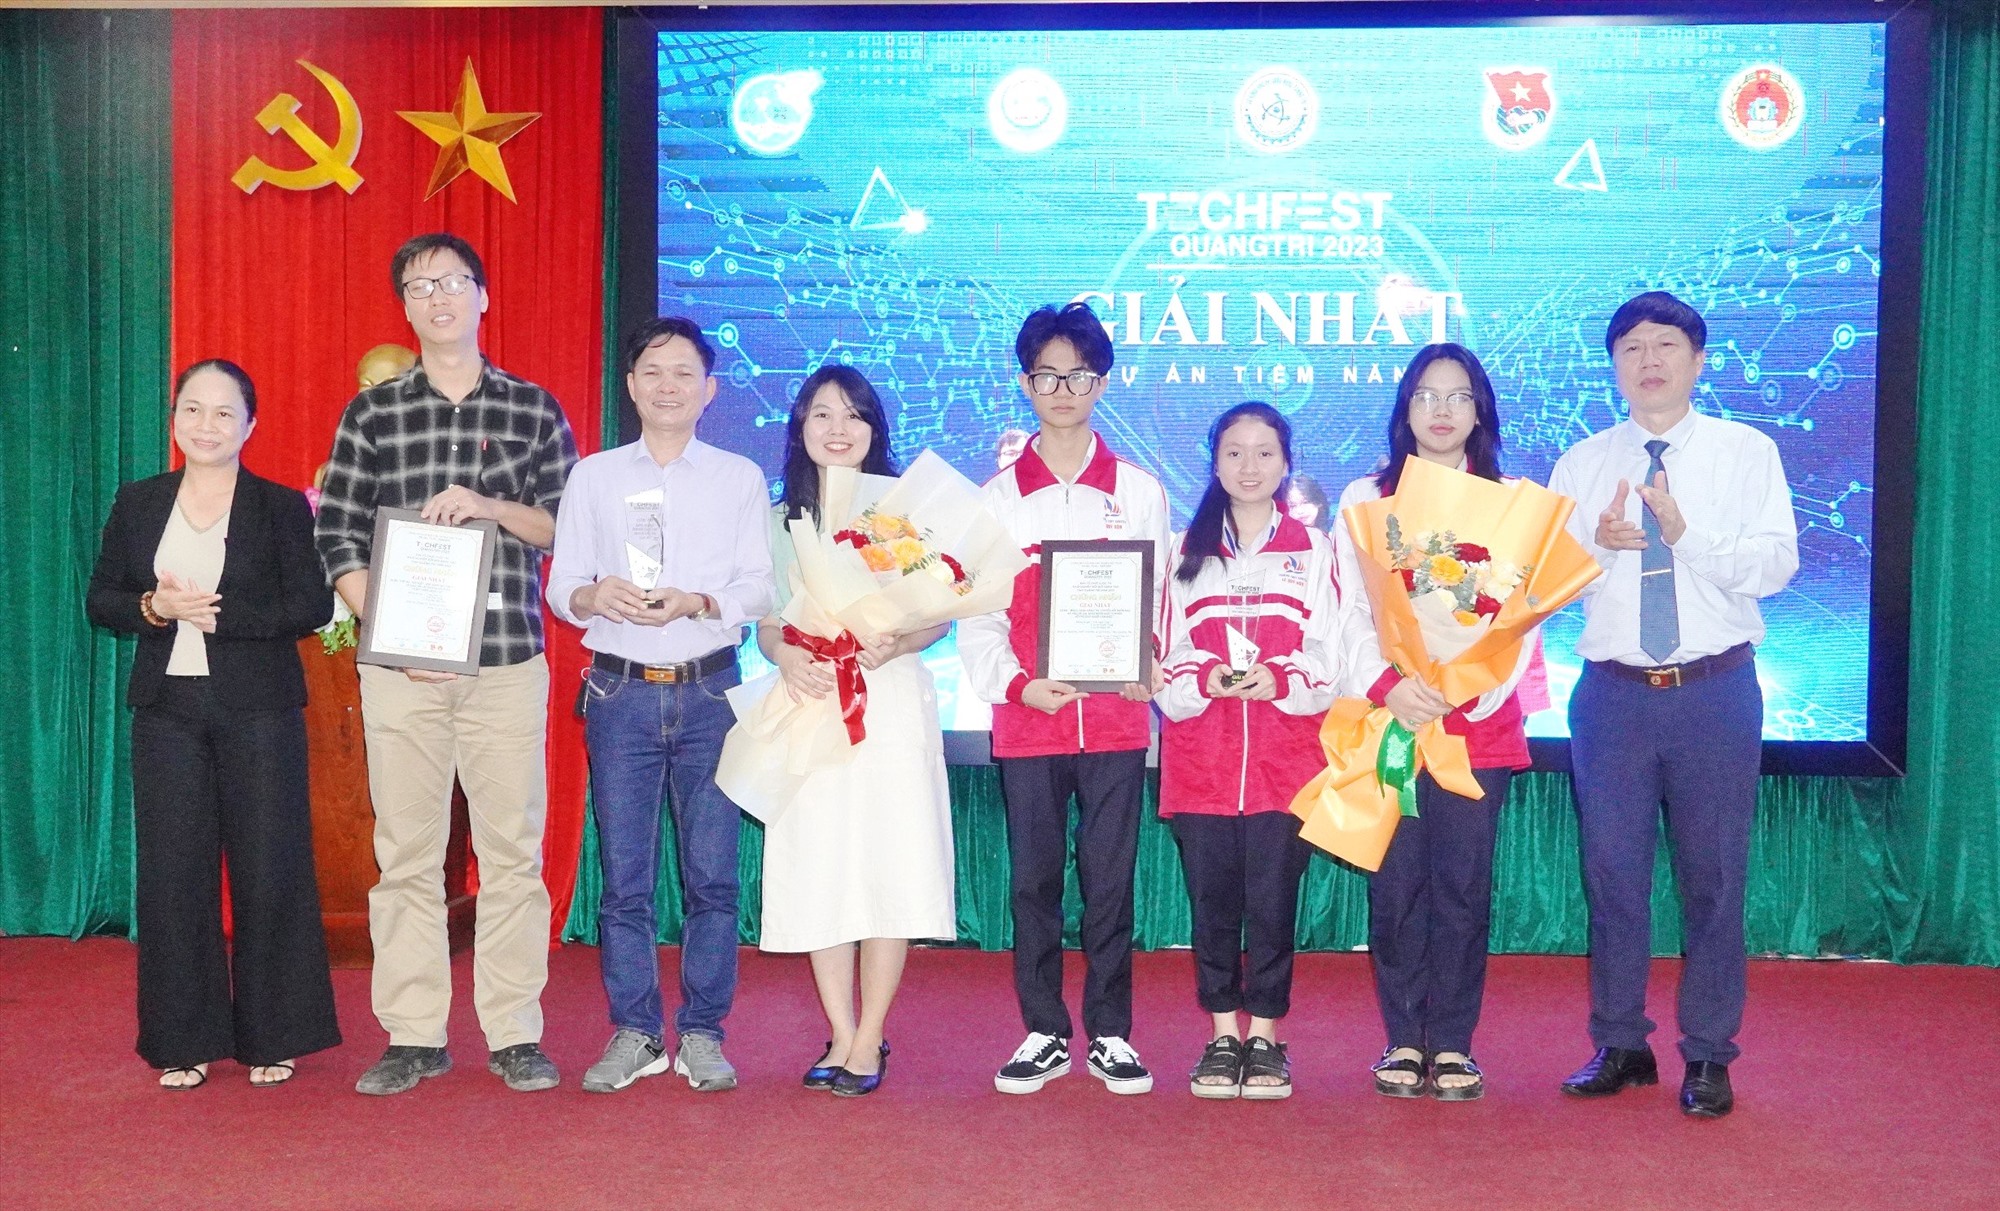 Lãnh đạo Sở KH&CN Trần Ngọc Lân và Hội LHPN tỉnh trao giải Nhất cho các tác giả, nhóm tác giả - Ảnh: ĐV